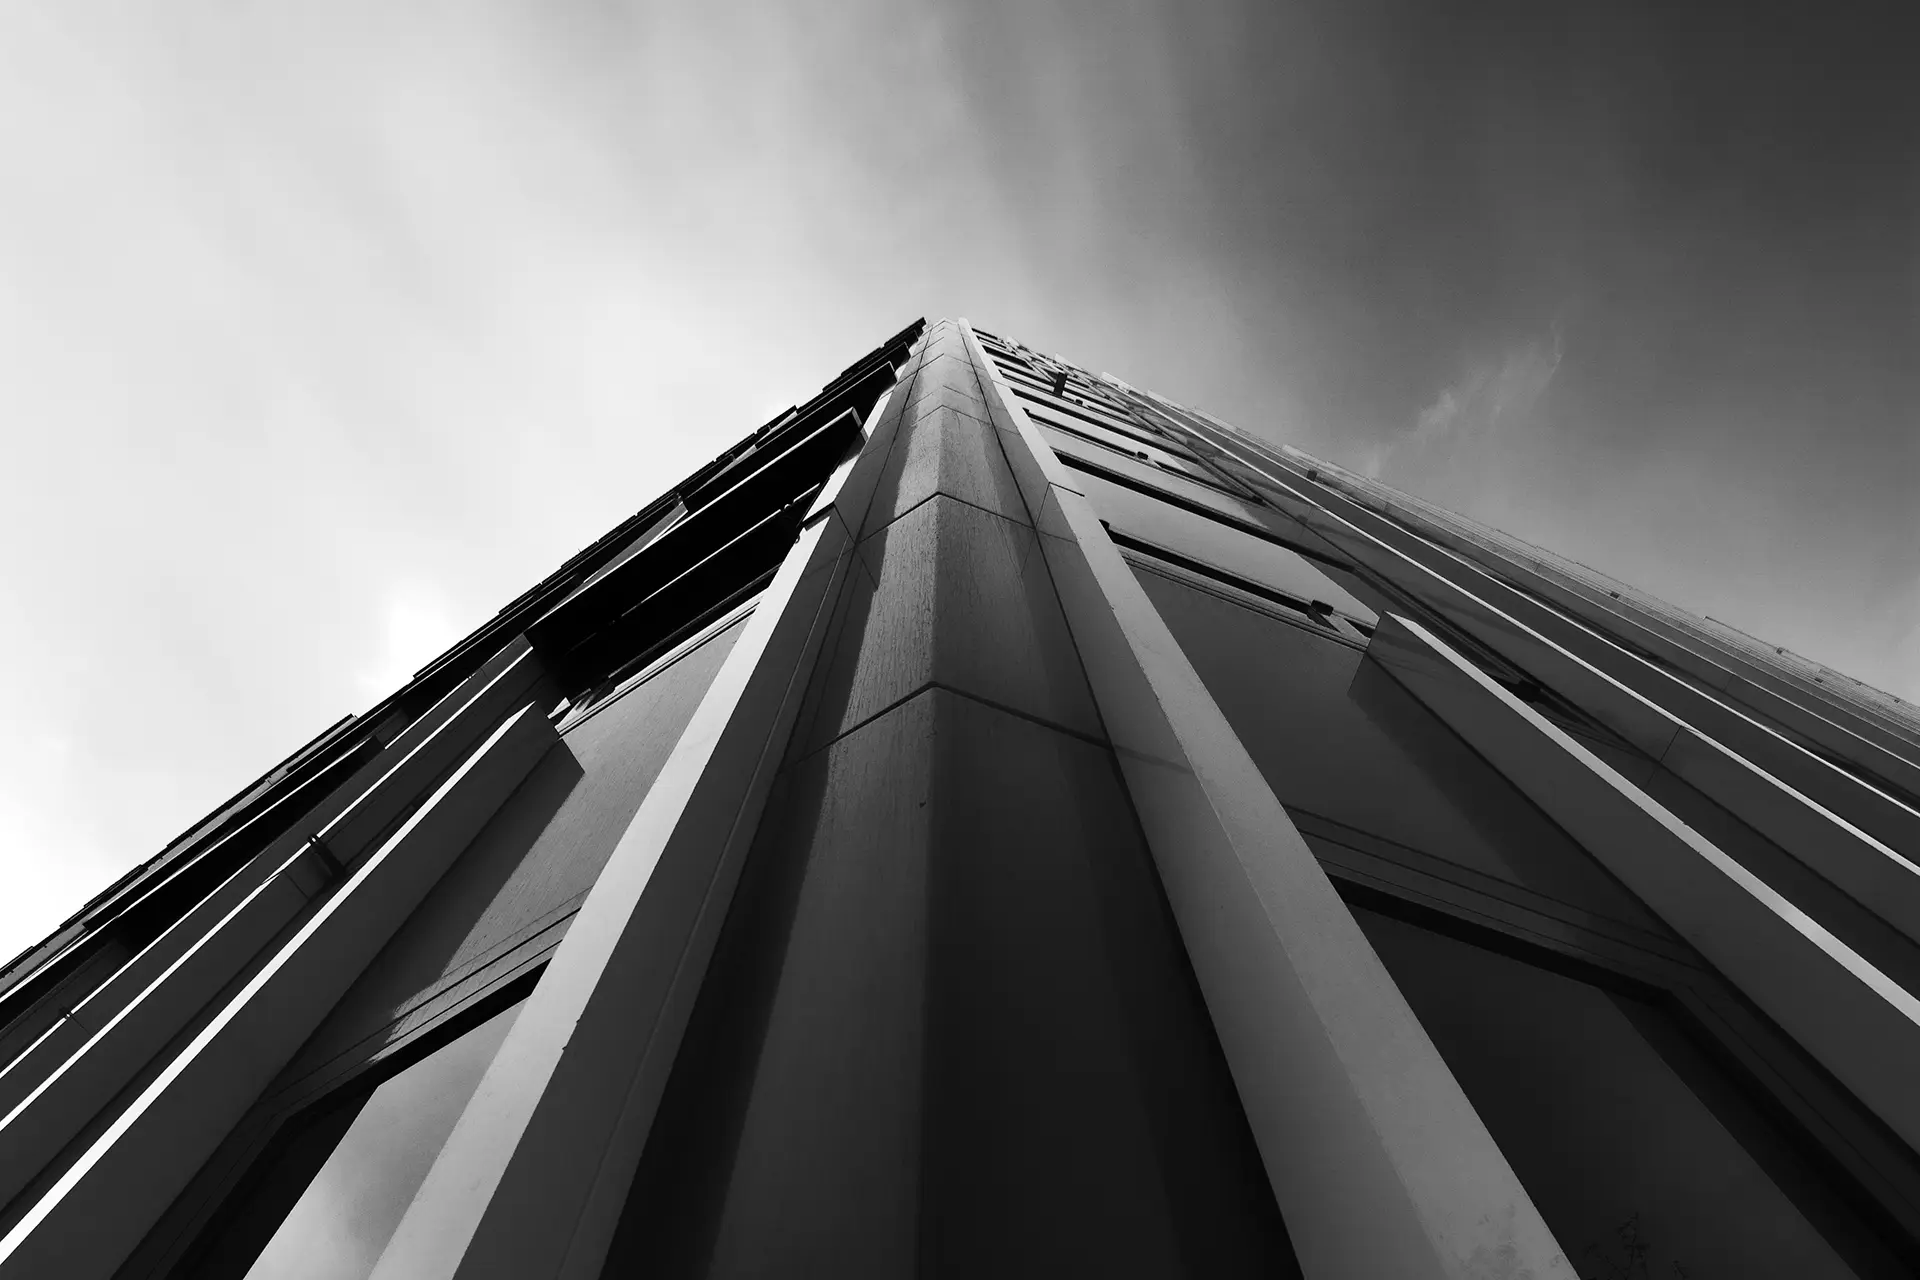 Schwarz-Weiß-Foto: ein Gebäude aus der Nähe am Gebäudeeck mit Blick nach oben aufgenommen. In der Mitte laufen kantige Säulen am Bauwerk nach oben spitz zu in einen dramatischen Himmel.